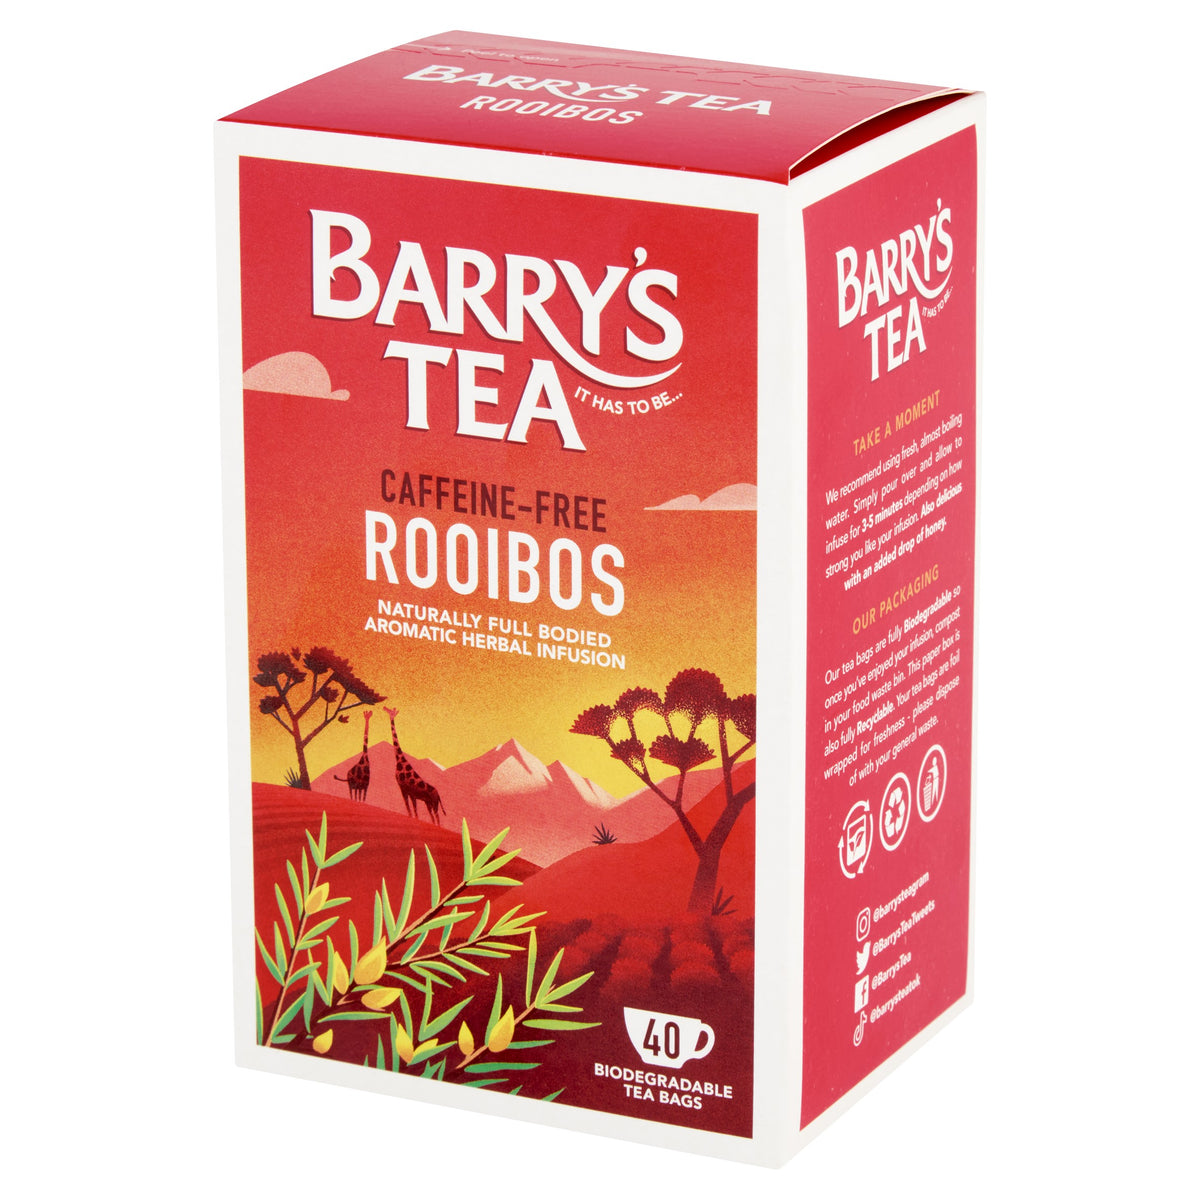 what is rooibos tea? –